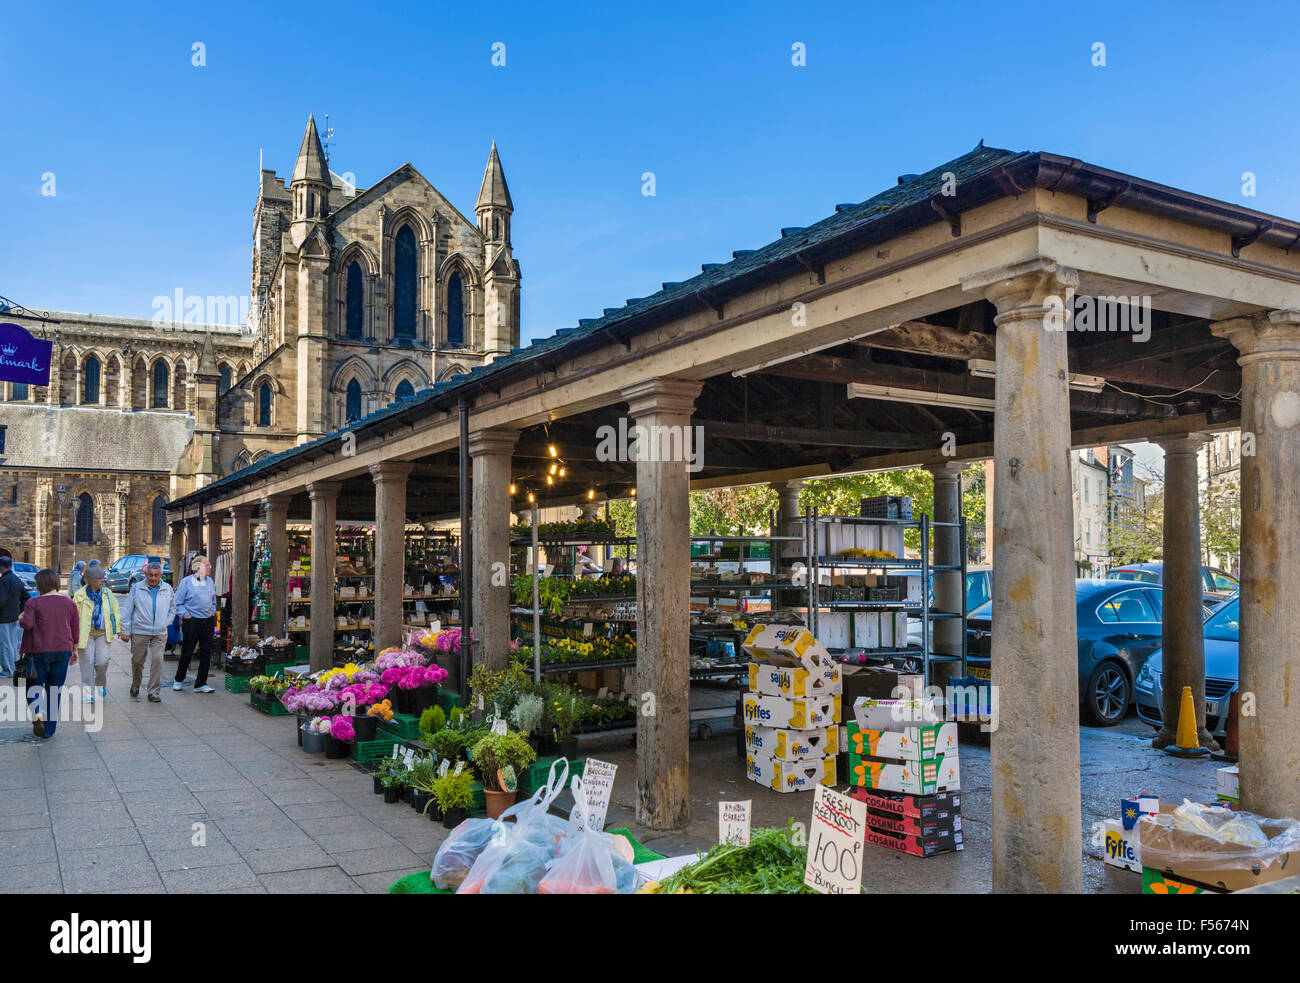 Markt auf dem Marktplatz mit Blick auf die Abtei, Hexham, Northumberland, England, UK Stockfoto